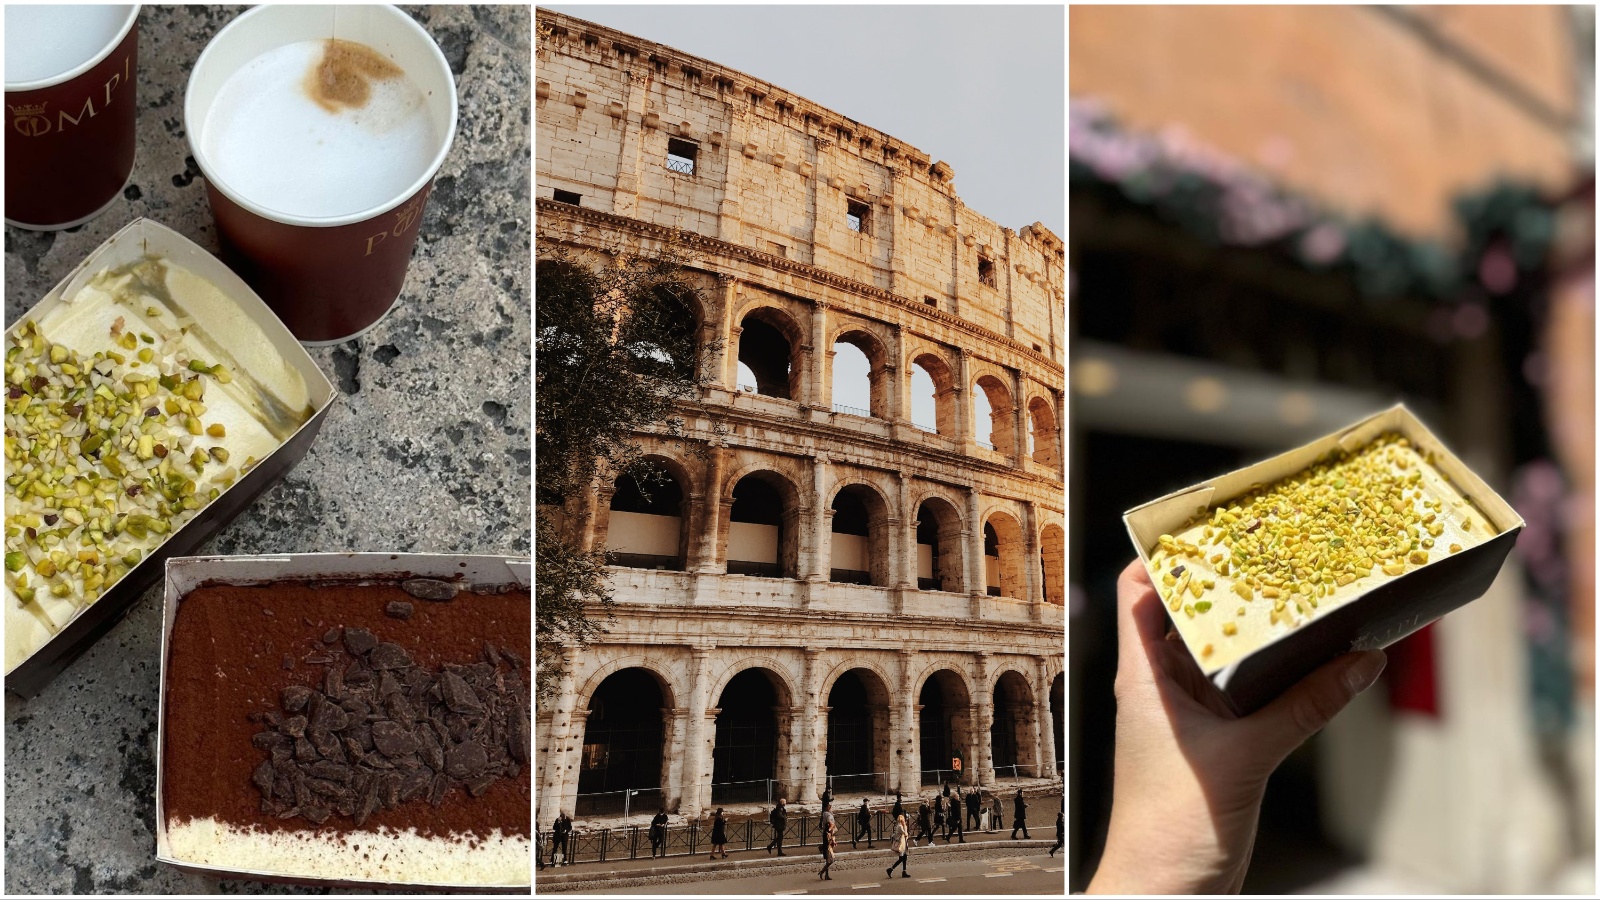 When in Rome: Vemo, kje poskusiti najboljši tiramisu